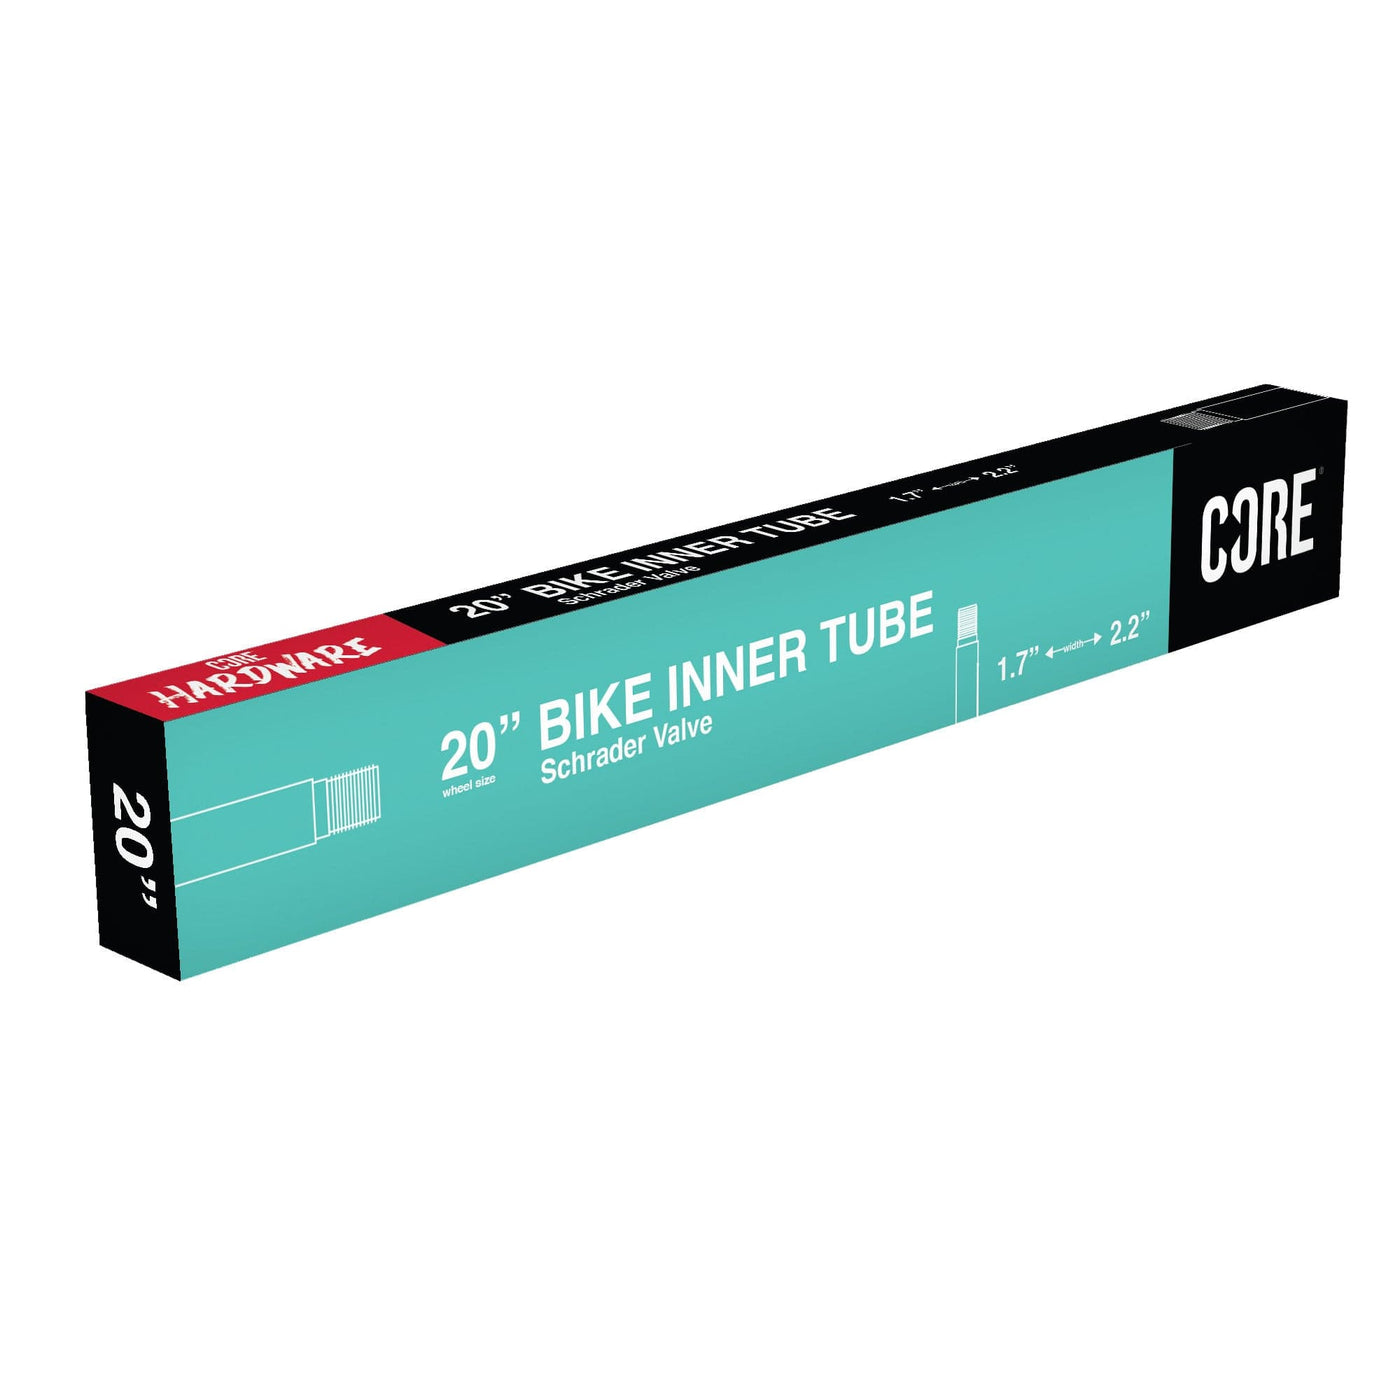 CORE 20'' Bike Inner Tube Schrader Valve 1.7'' - 2.2'' I 20'' Bike Inner Tube